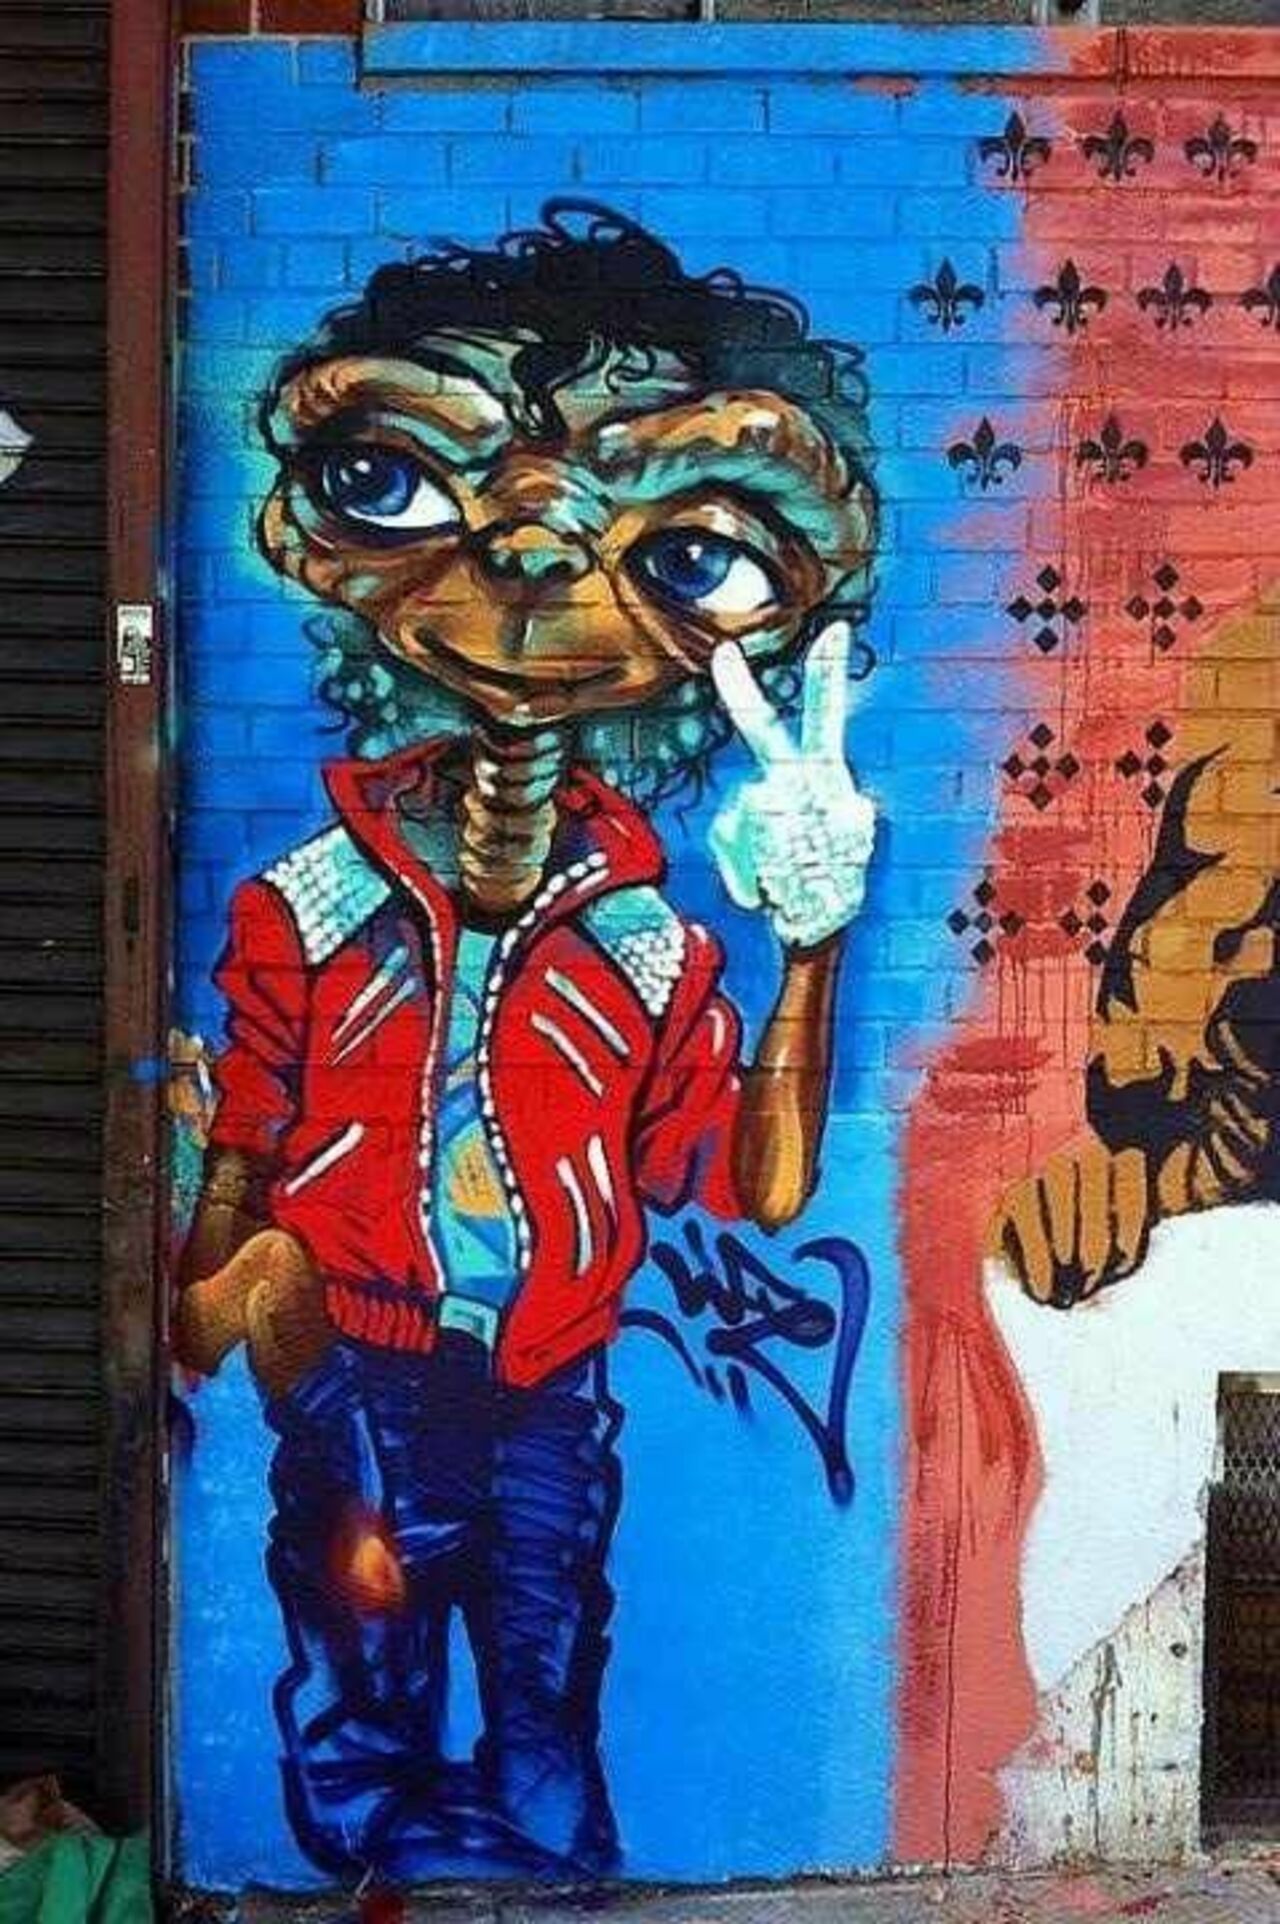 ET Michael Jackson mural. IDK the artist#streetart #mural #graffiti #art https://t.co/Tul5Kgzvis